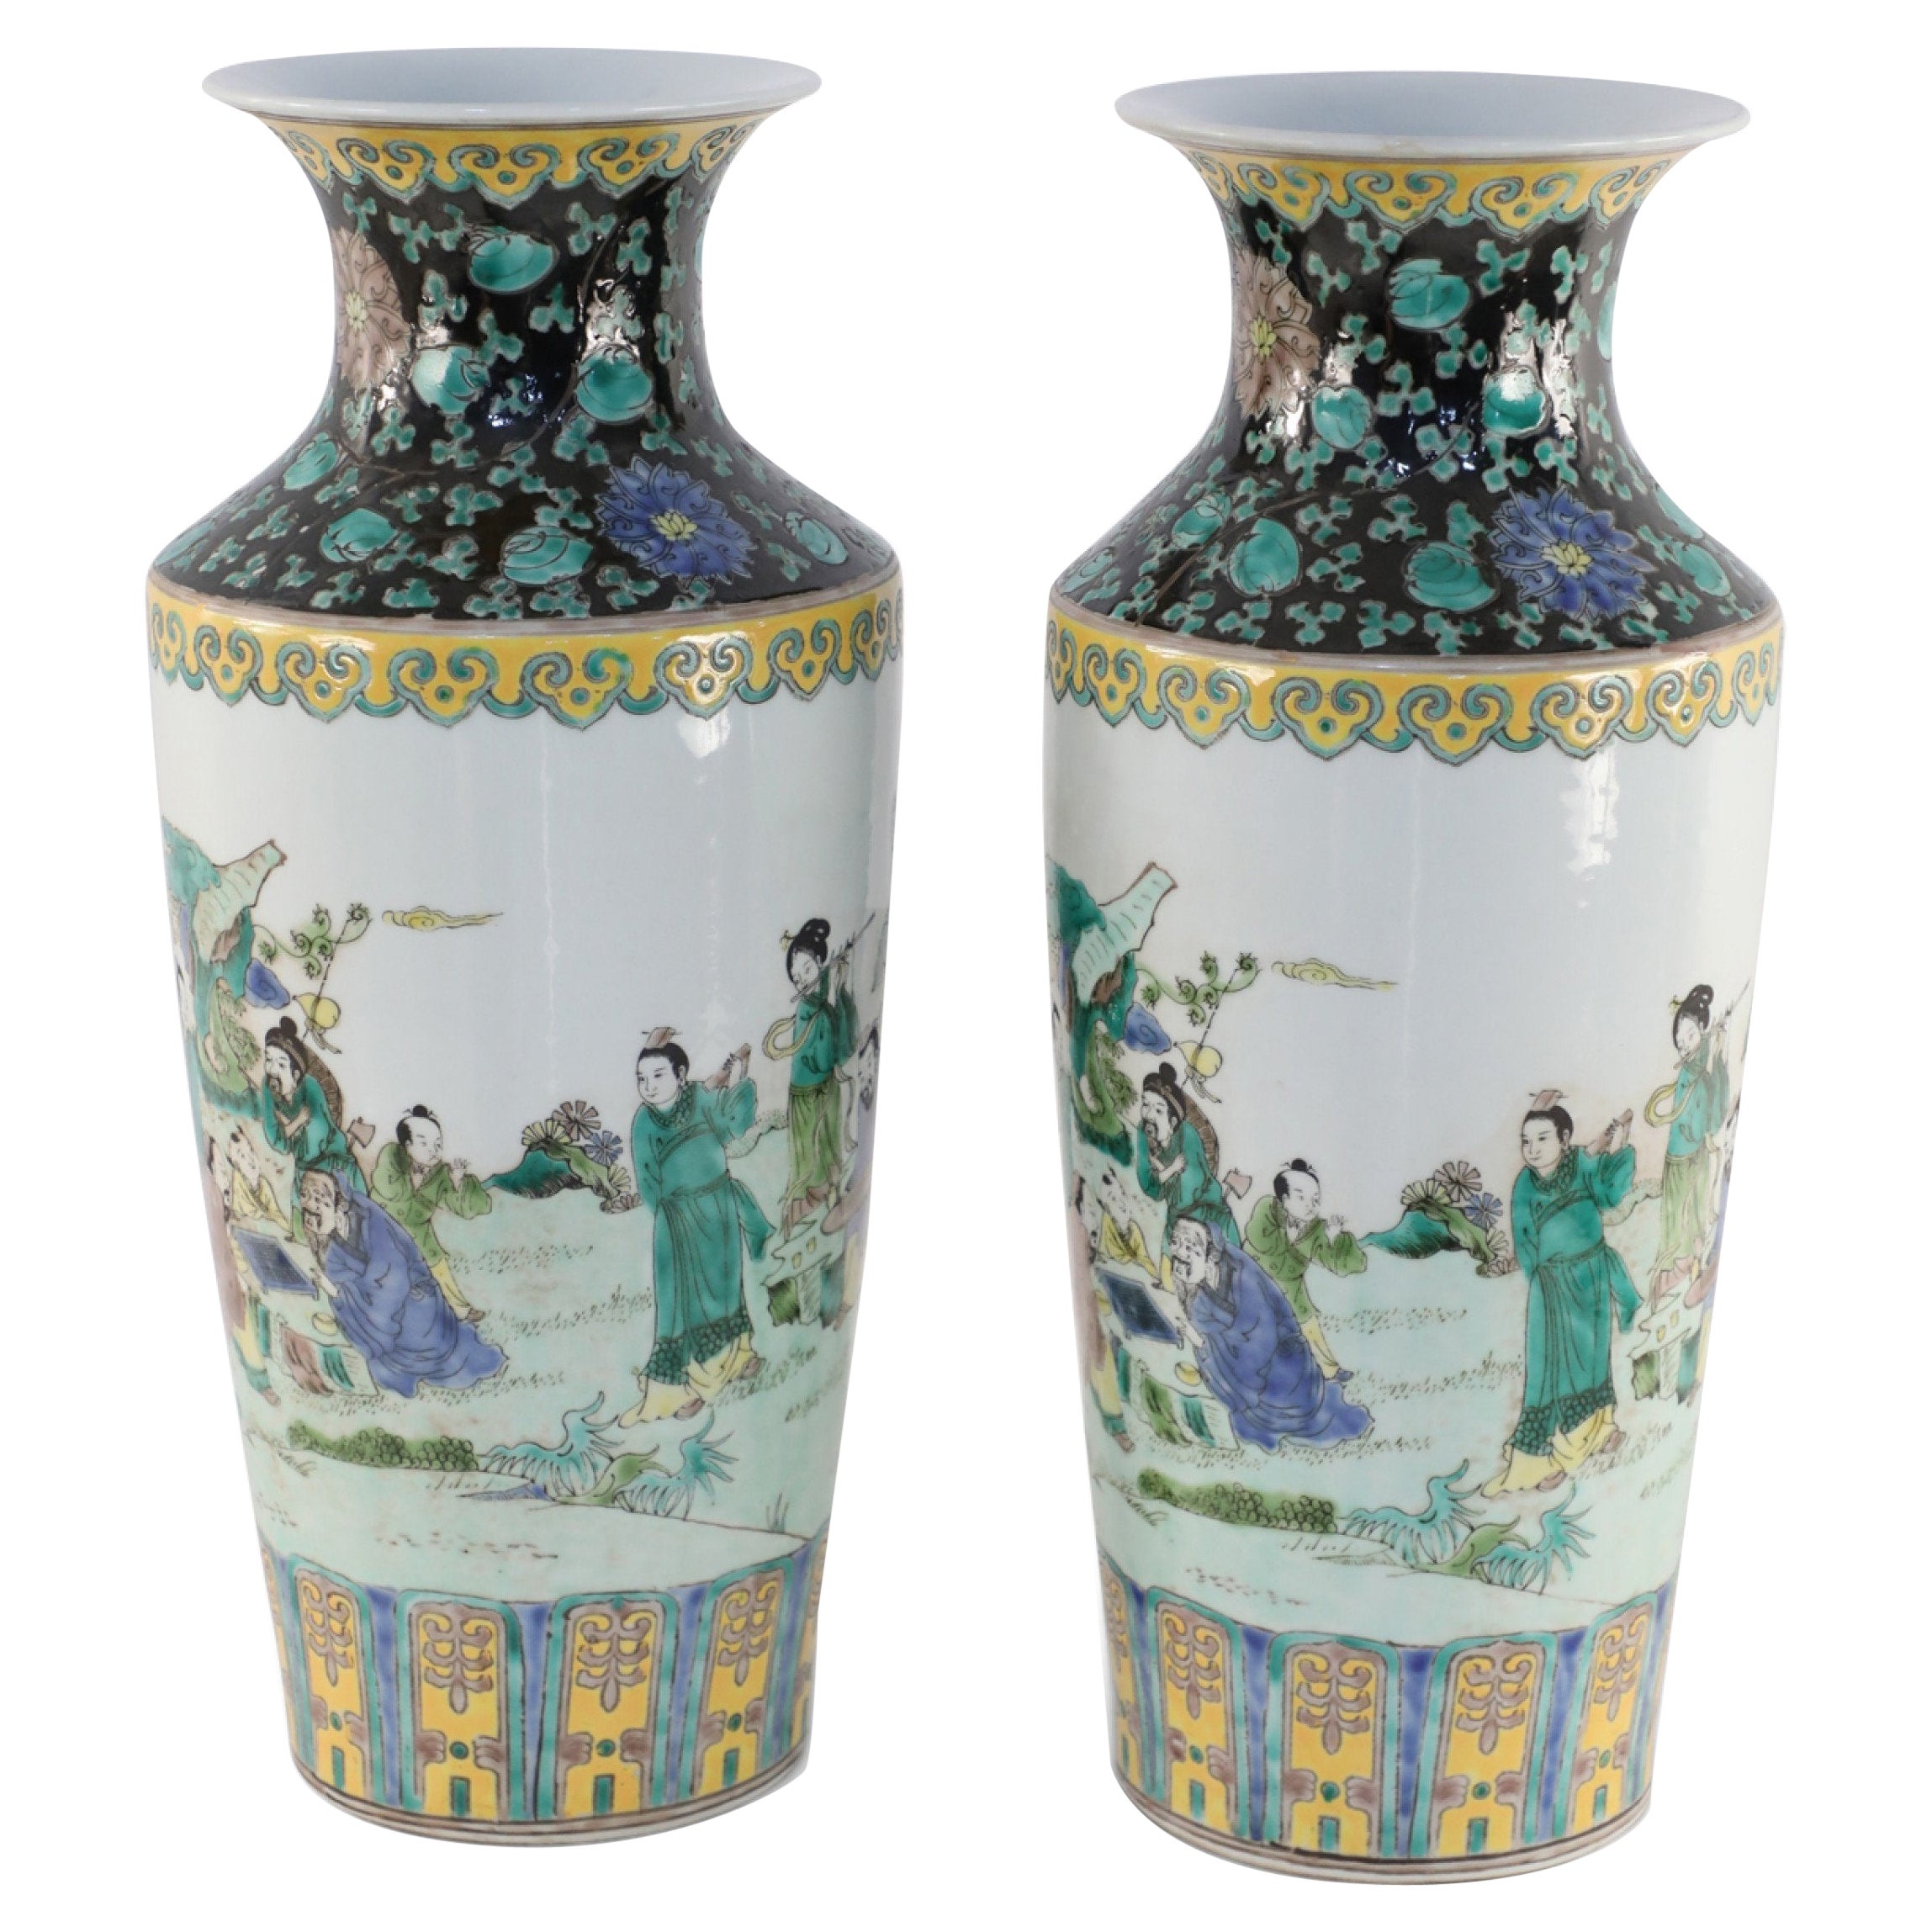 Pair of Chinese Qing Dynasty Garden Scene Porcelain Sleeve Vases